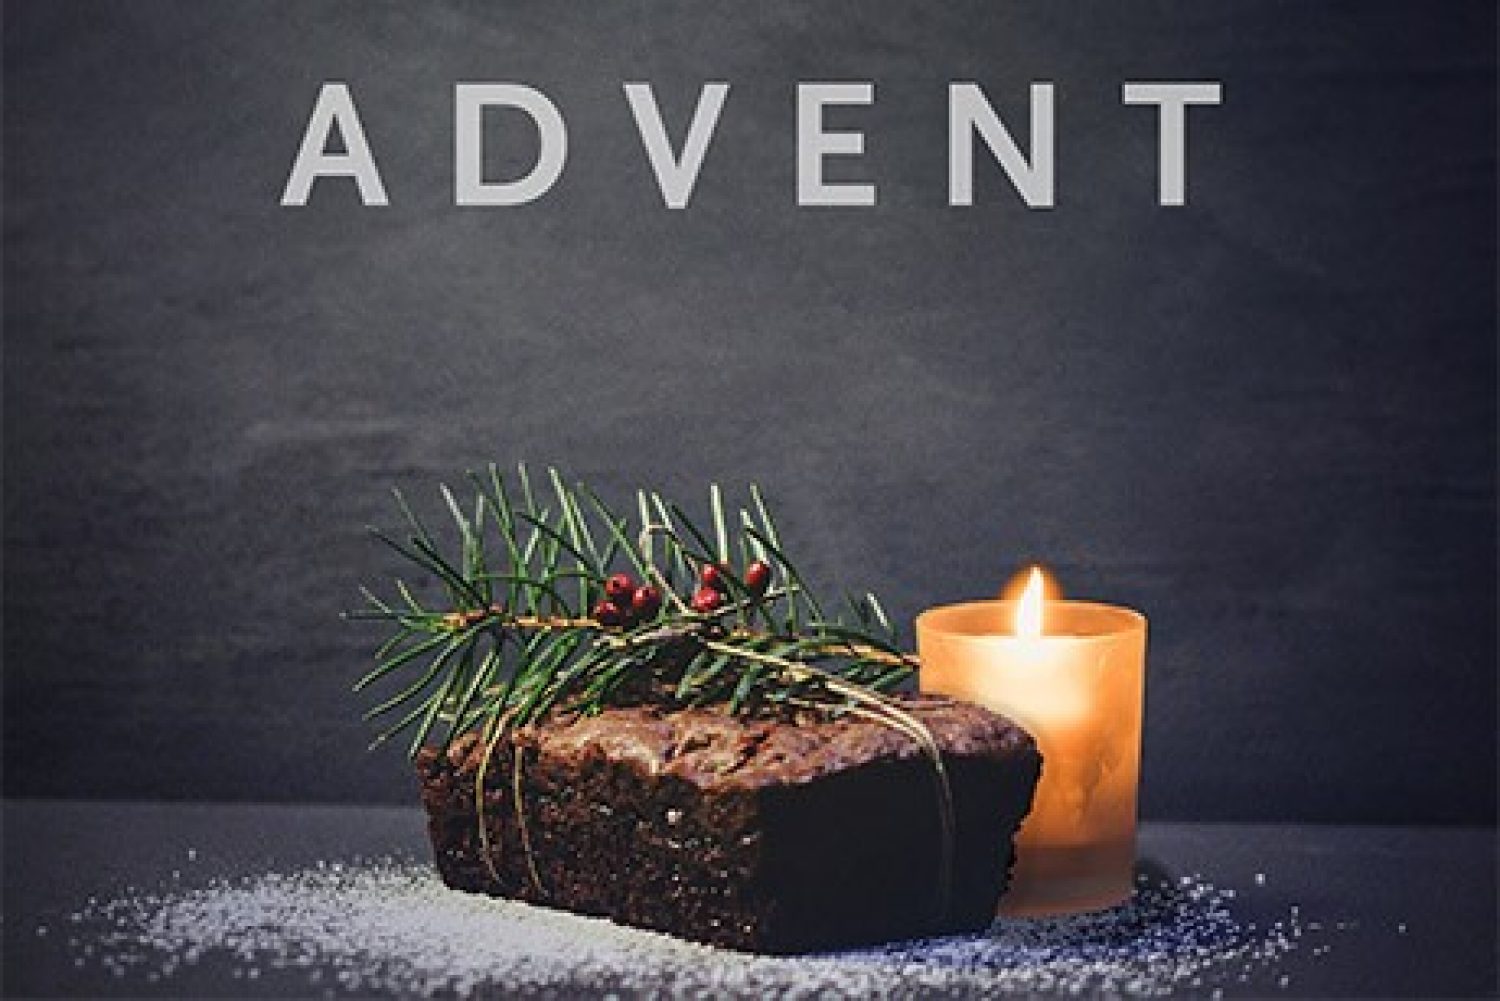 Advent bread